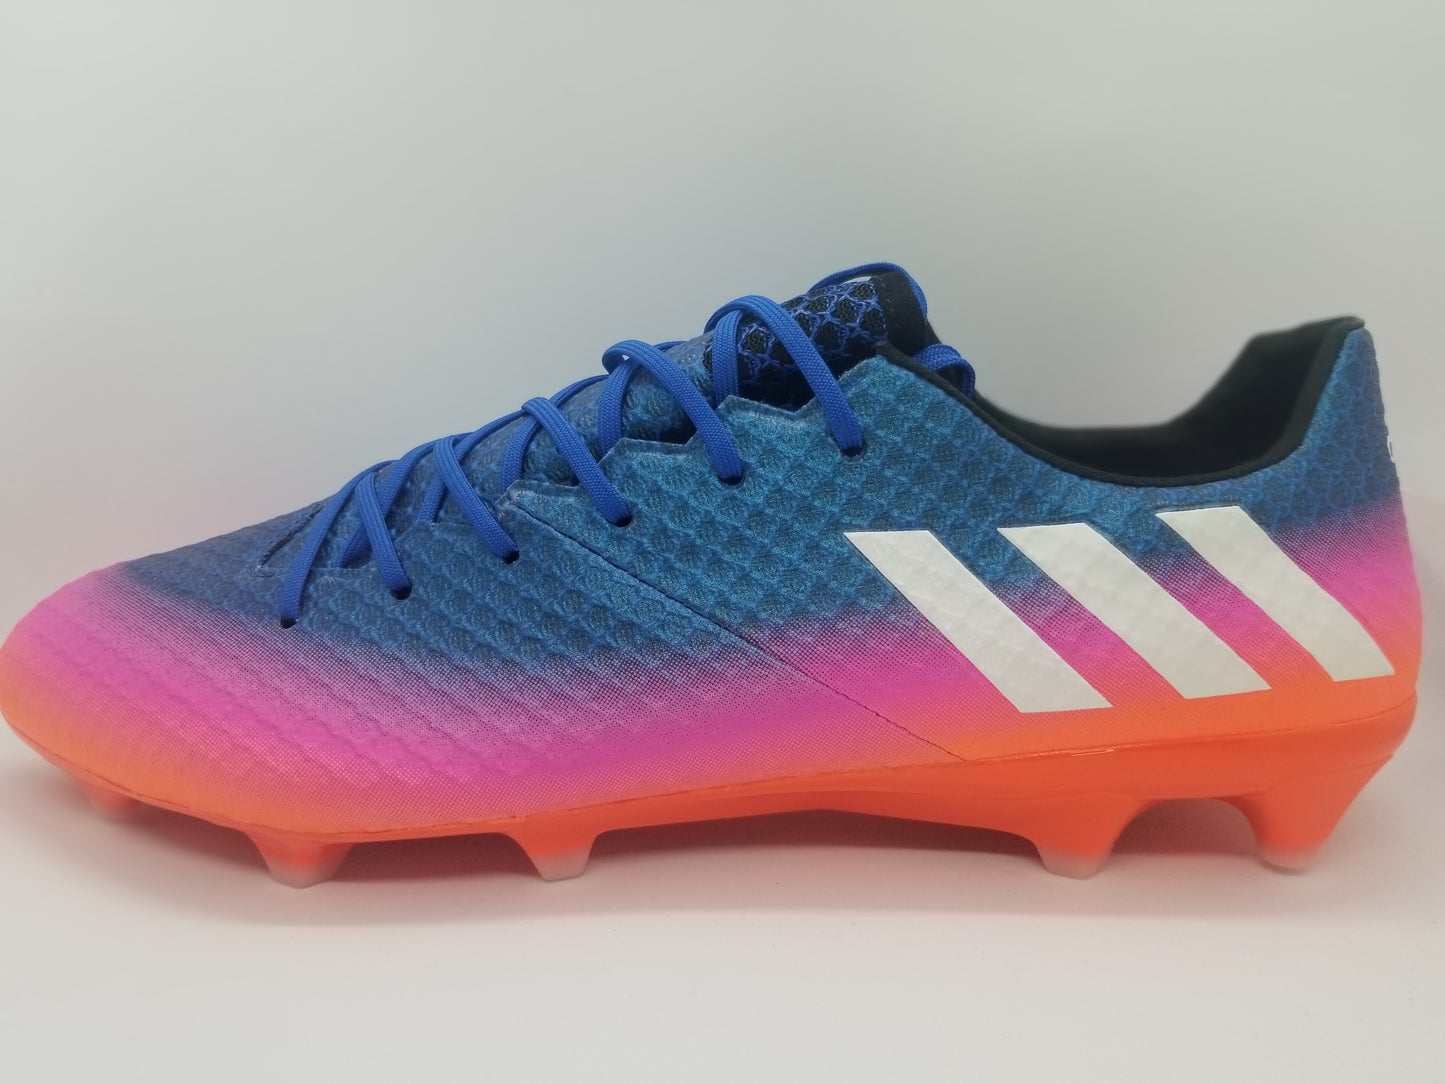 Adidas Messi 16.1 FG